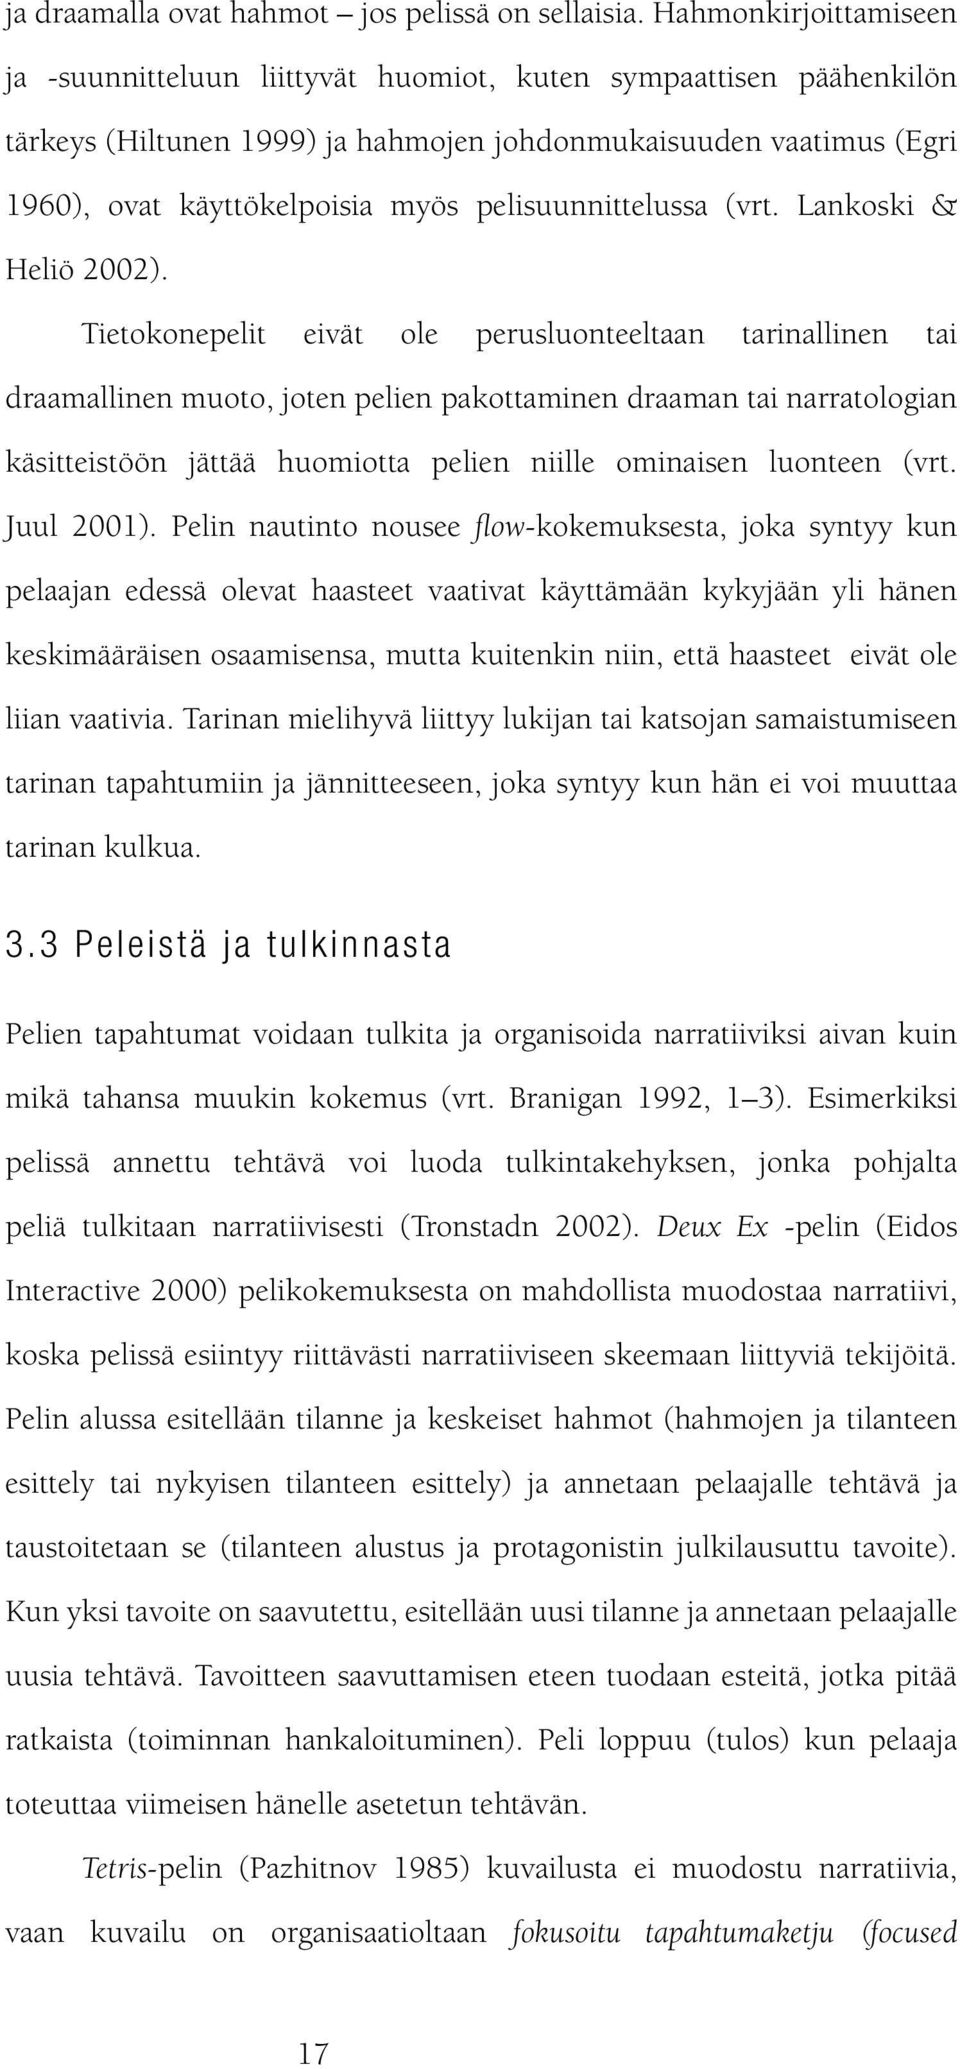 pelisuunnittelussa (vrt. Lankoski & Heliö 2002).